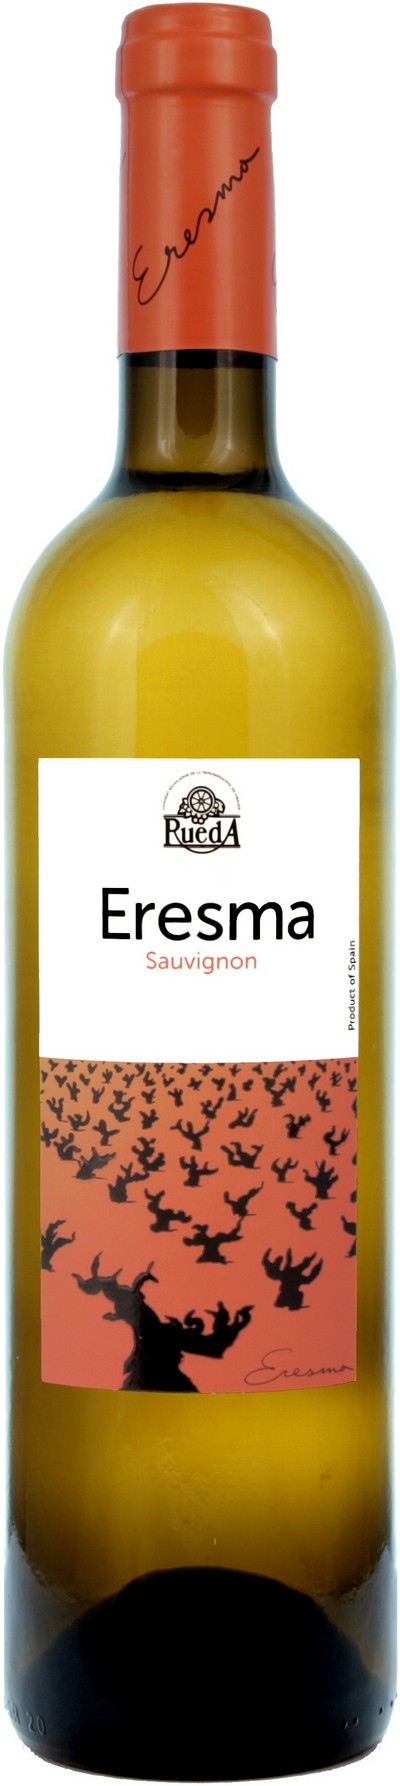 eresma-sauvignon-2016